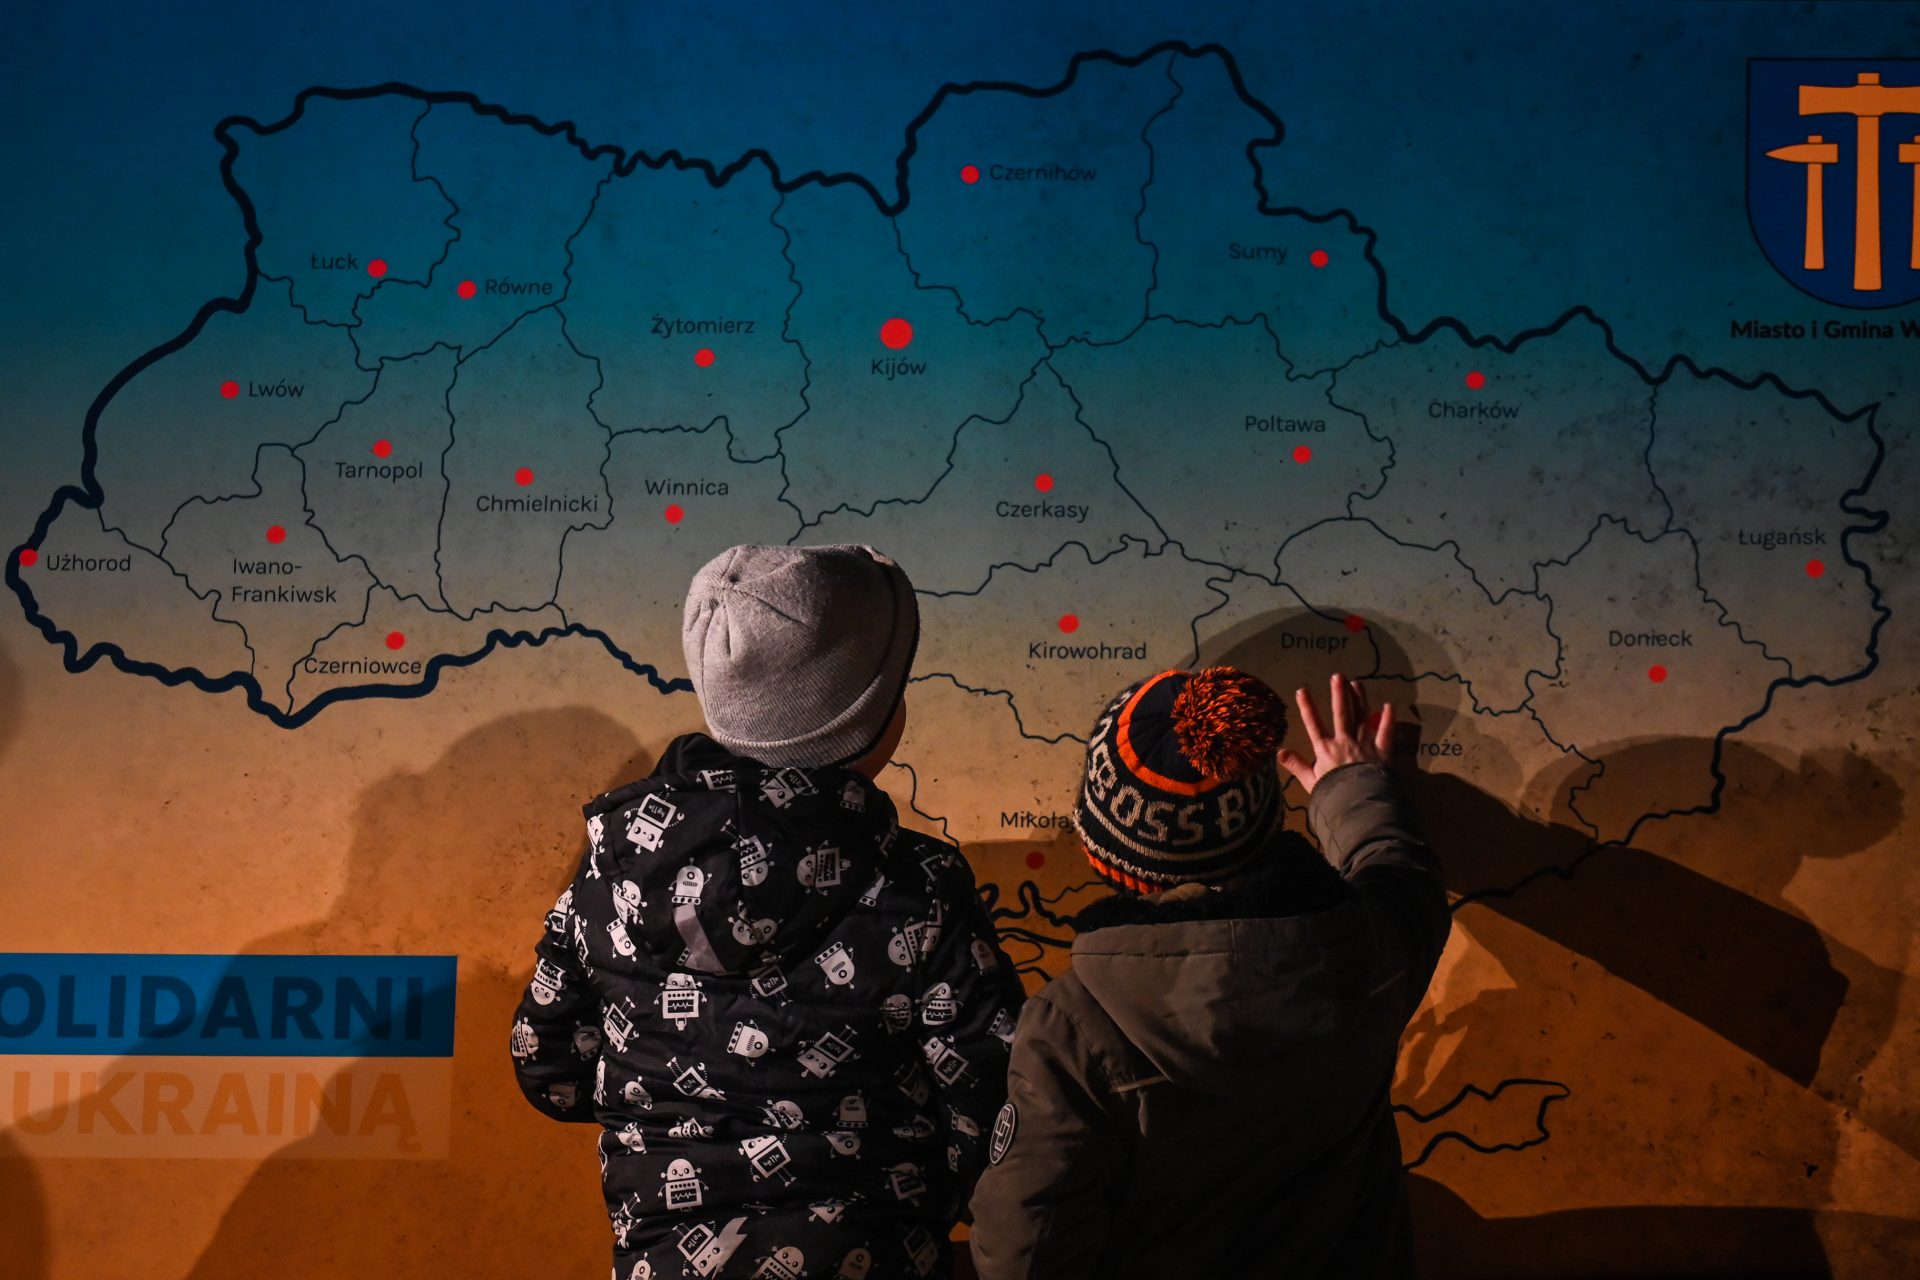 ロシアはウクライナを地図上から消し去る？ メドヴェージェフ元大統領の過激な発言と不穏な地図が示すものとは